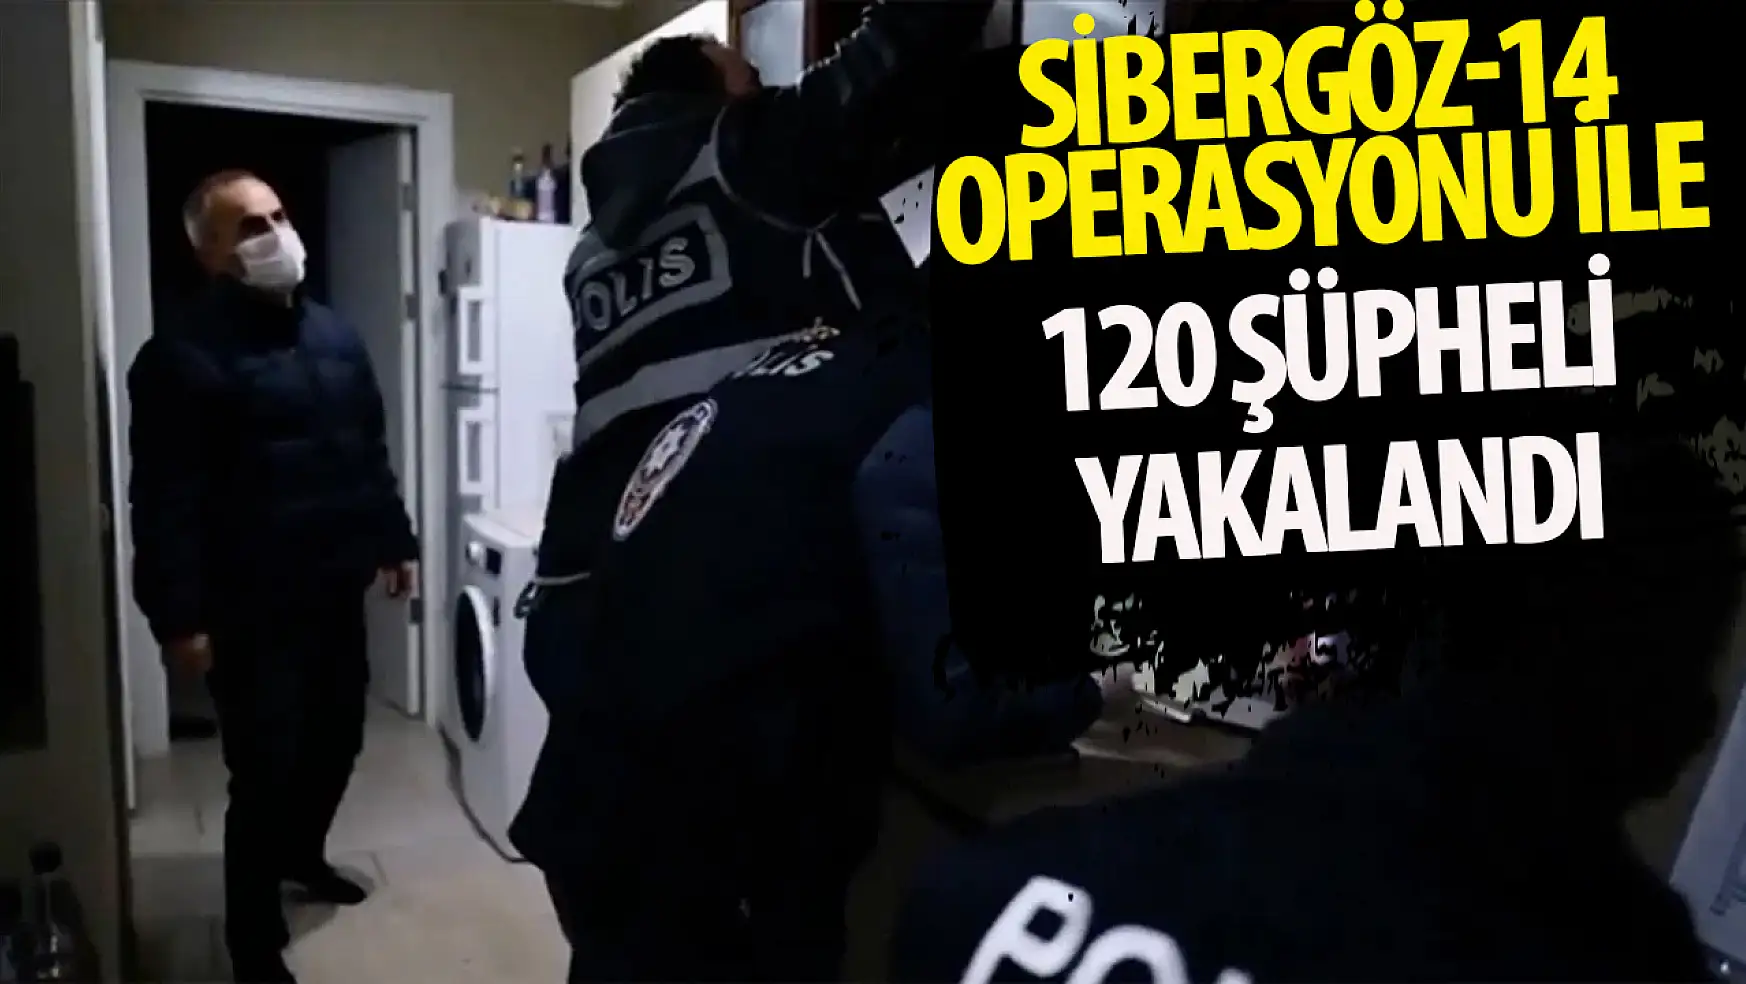 SİBERGÖZ-14 operasyonu ile 120 şüpheli yakalandı